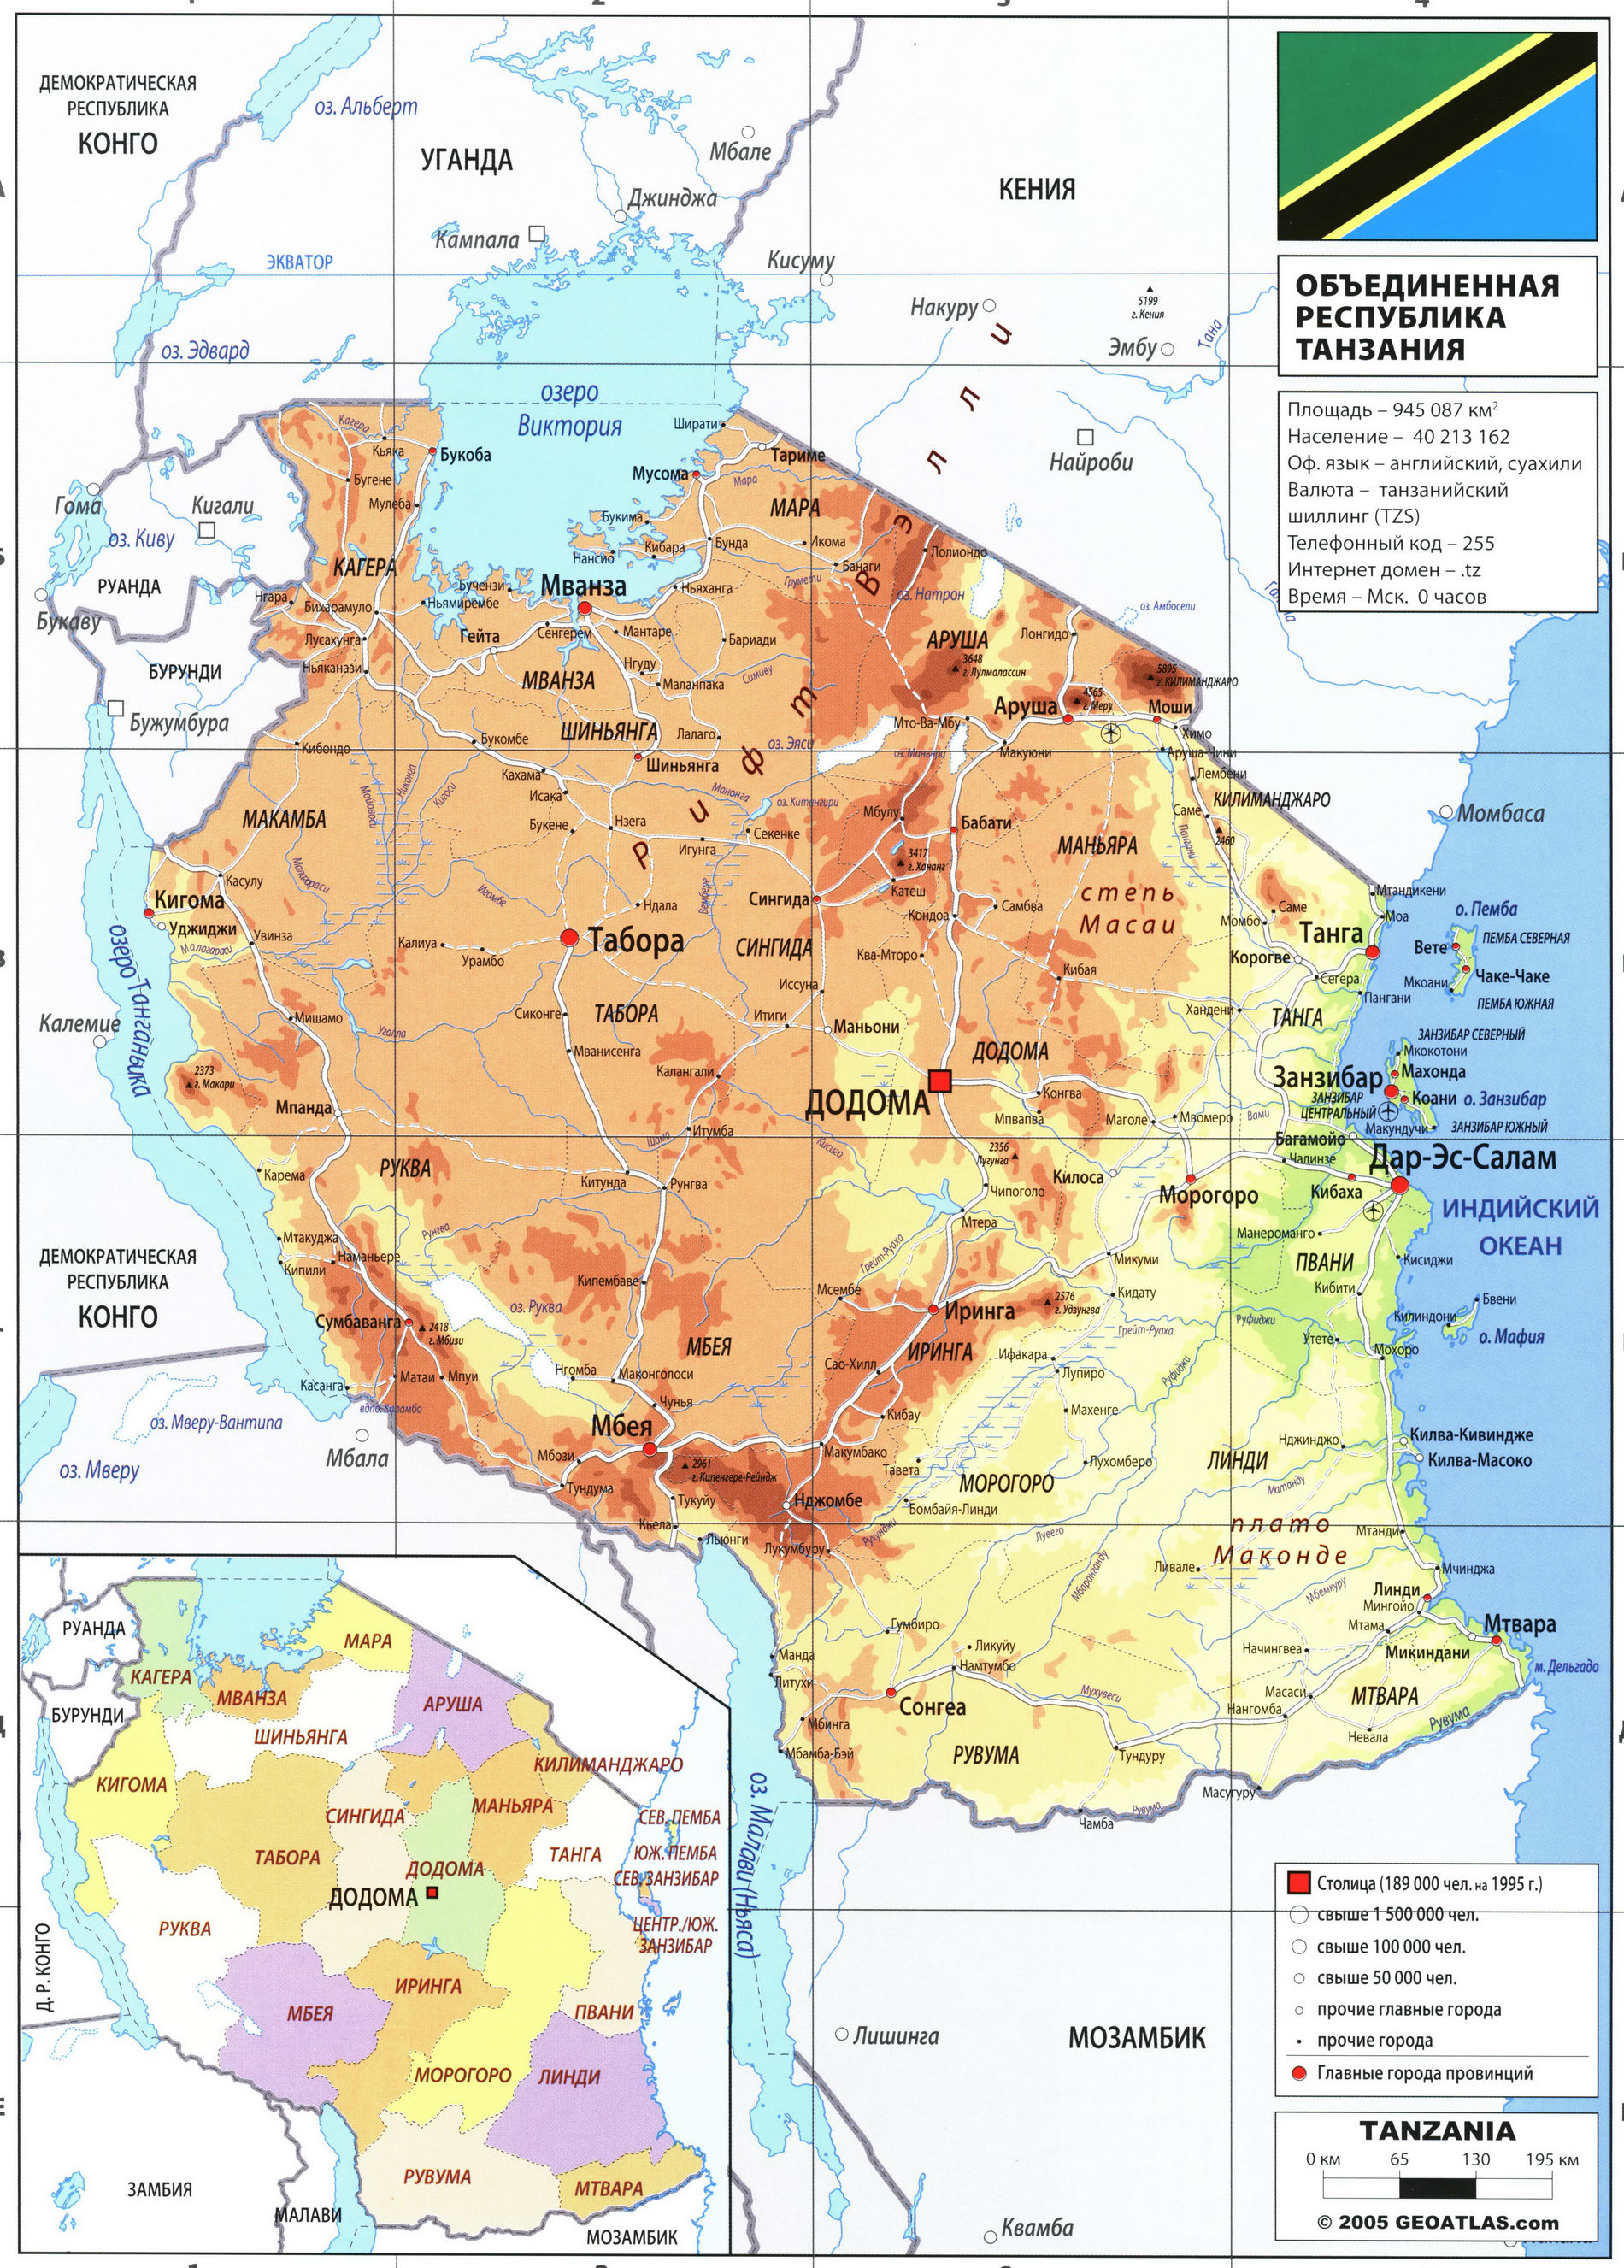 Танзания карта на русском языке